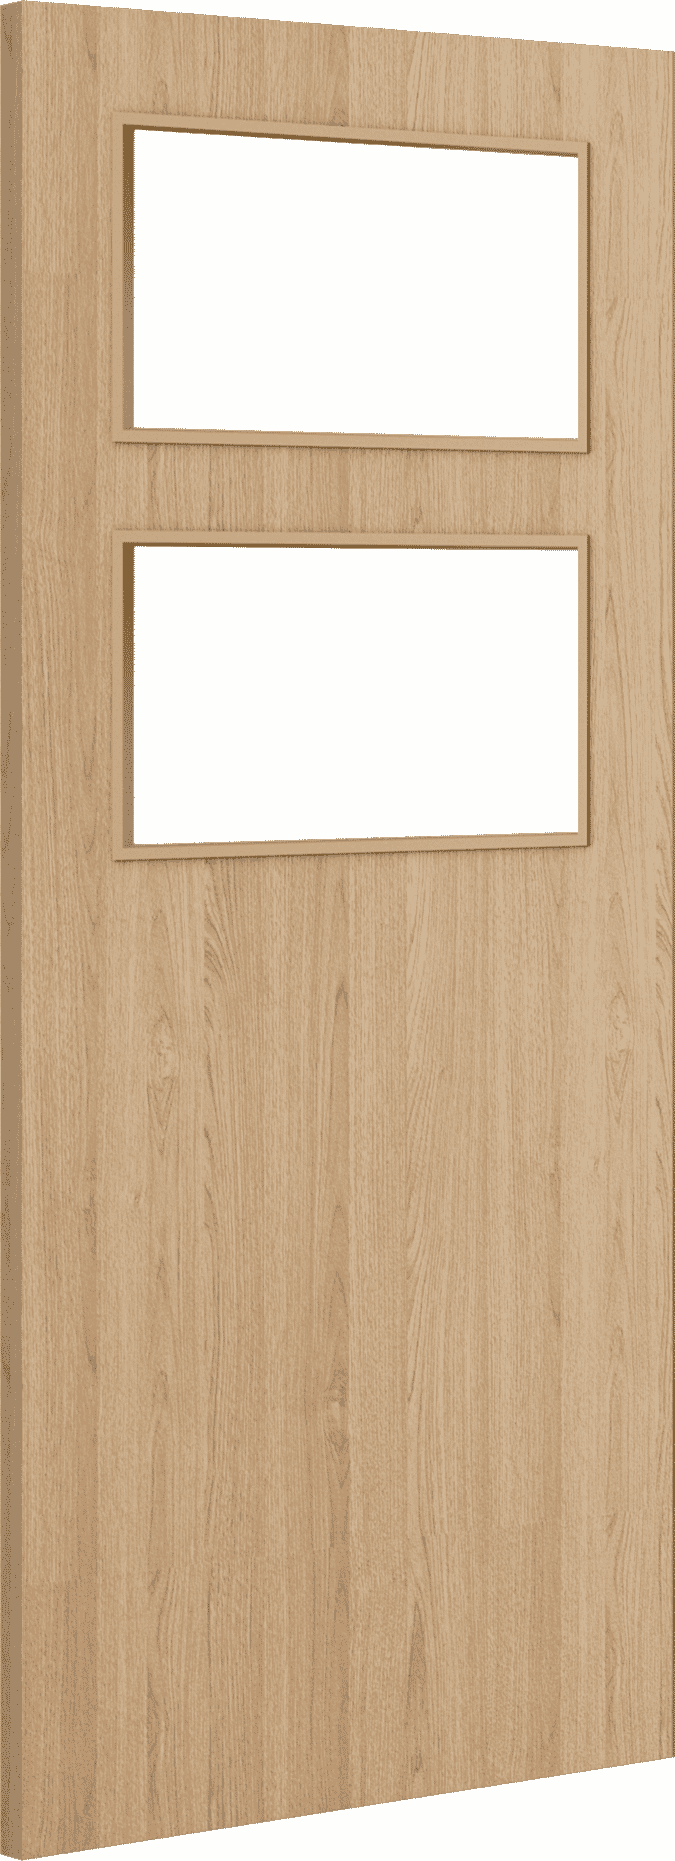 2040mm x 826mm x 54mm Architectural Oak 02 Clear Glazed - Prefinished FD60 Fire Door Blank